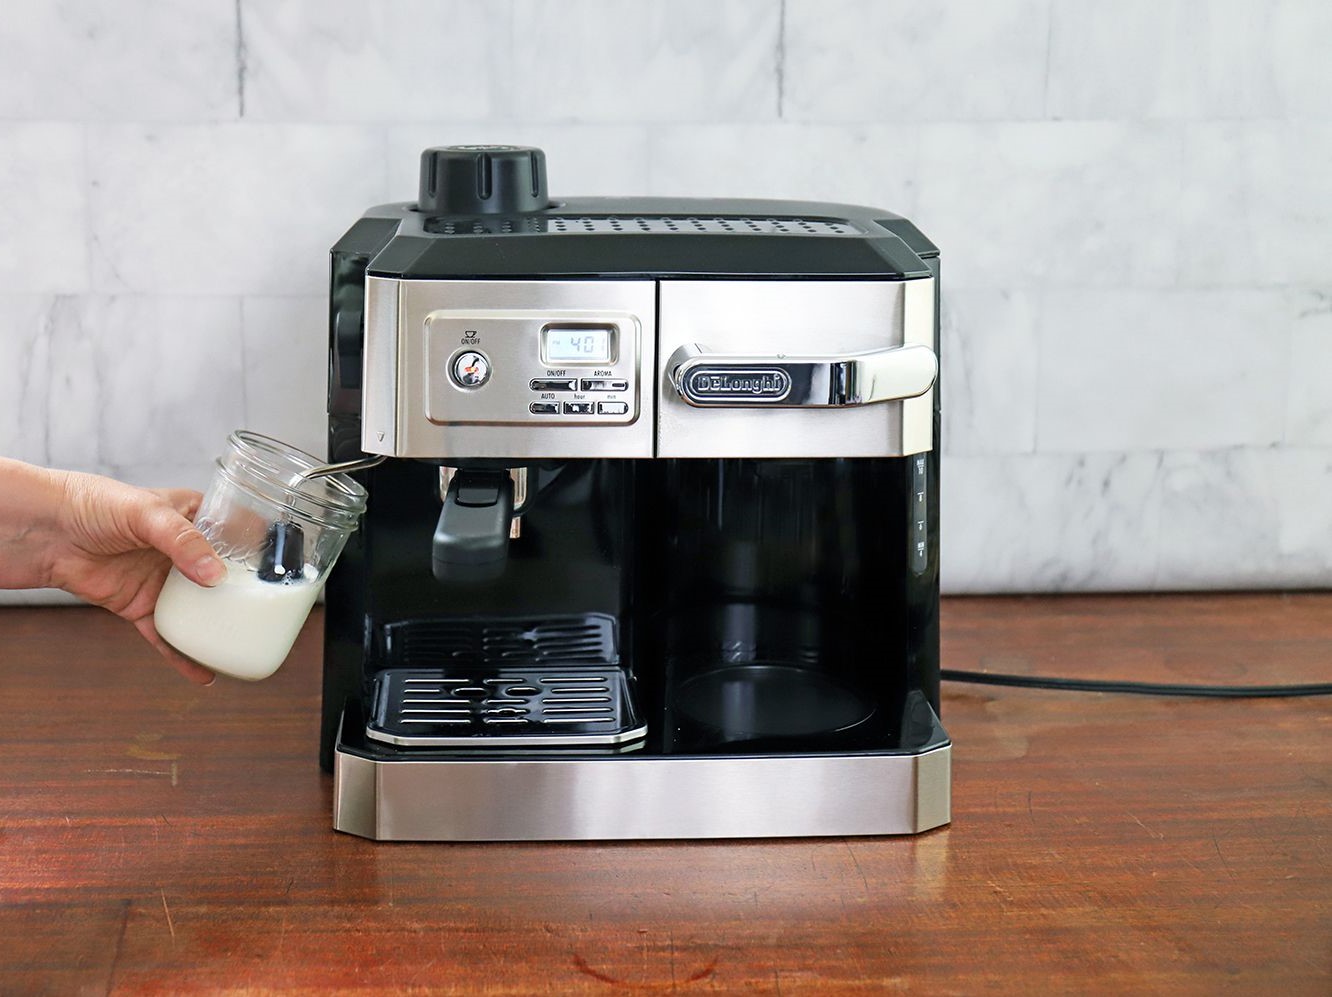 How To Descale The Delonghi Combination Coffee/Espresso Machine